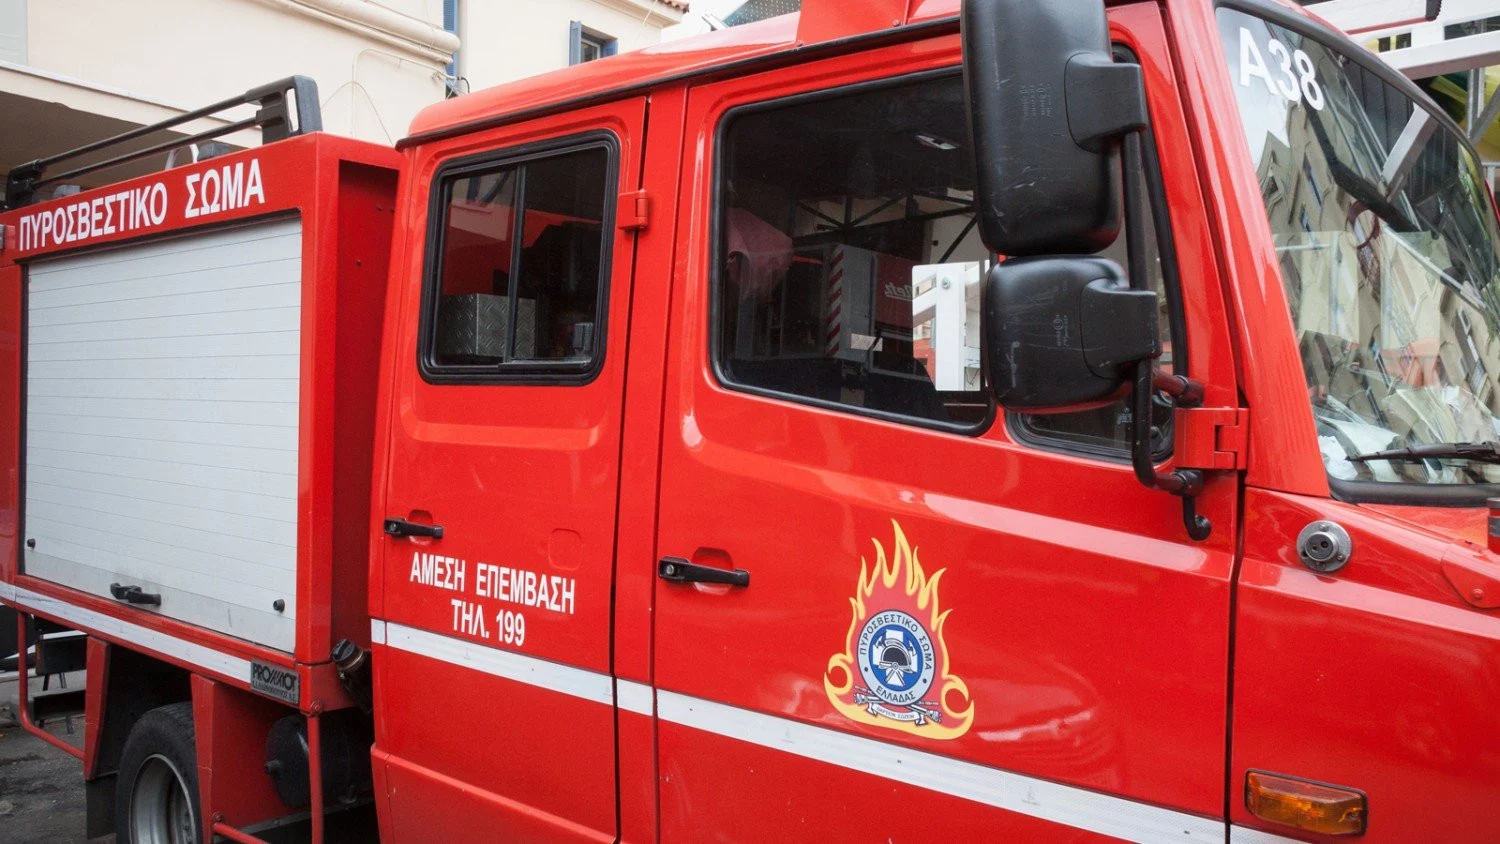 Αυλώνα: Άνδρας έβαλε φωτιά κάνοντας εργασίες με ηλεκτρικό τροχό